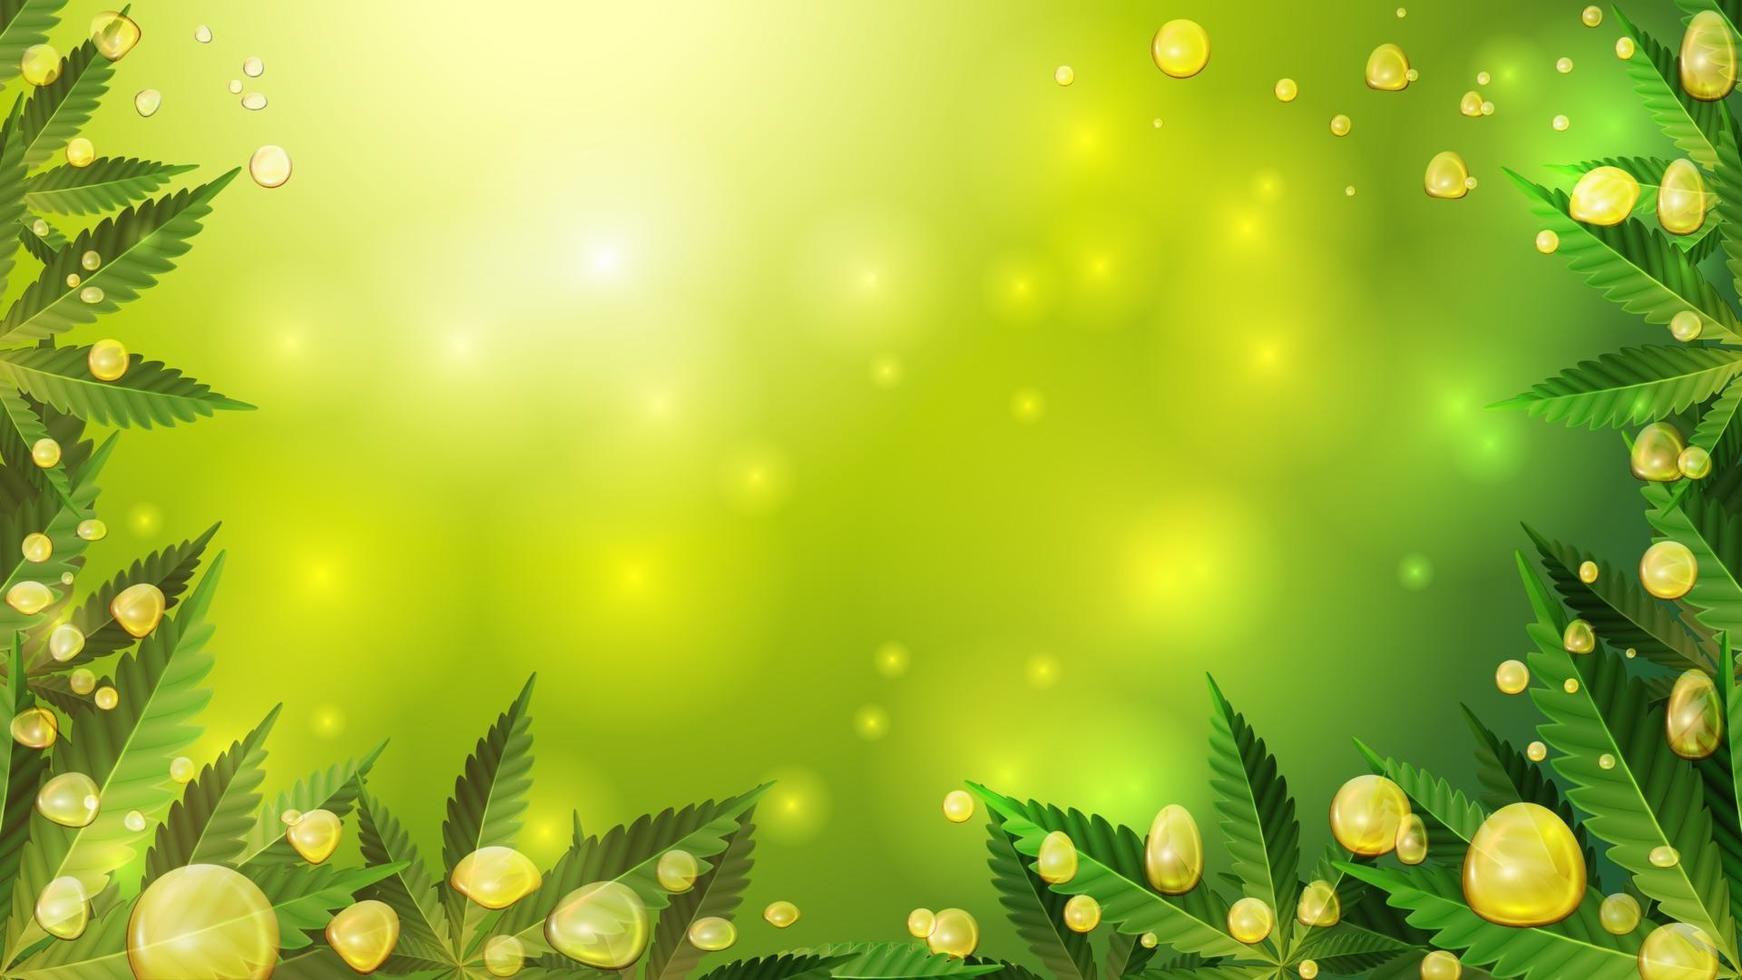 bolhas de ouro de óleo de cannabis em fundo desfocado verde com folhas de cannabis, efeito de vetor realista.